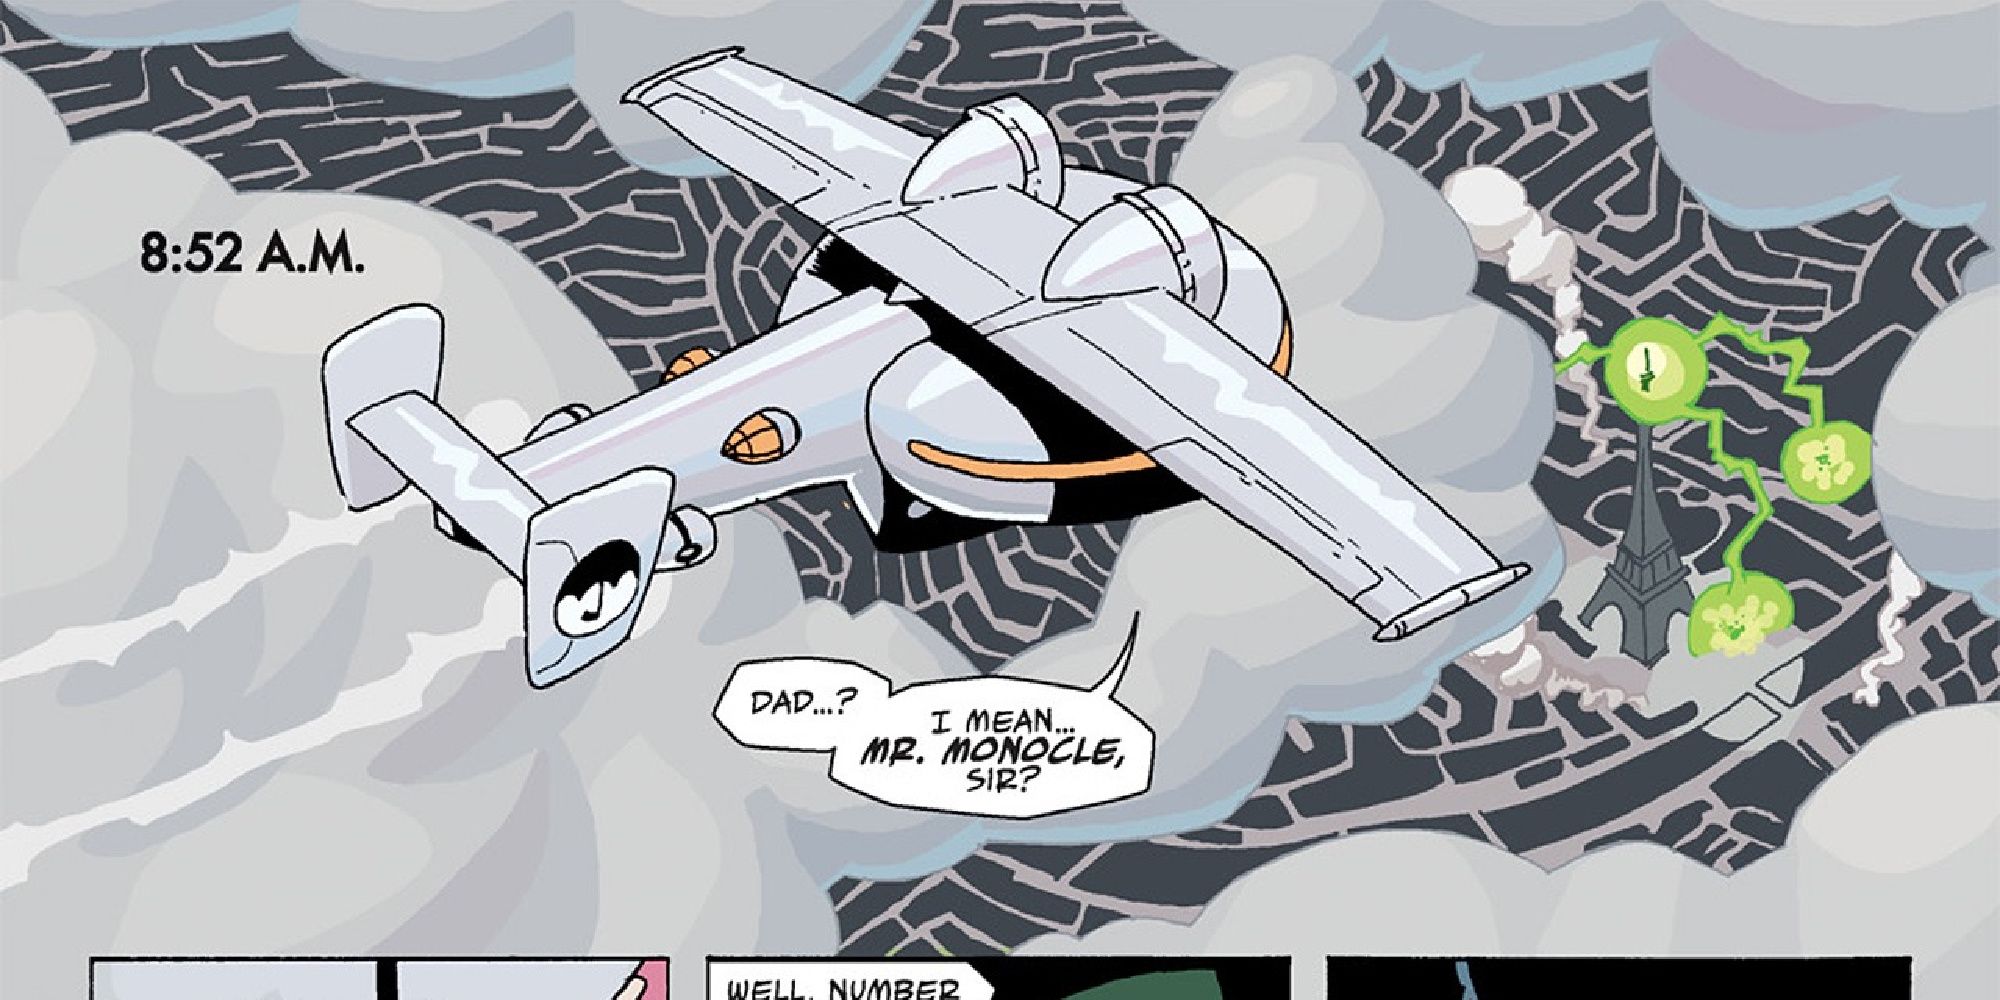 The Minerva flies in Umbrella Academy comics.